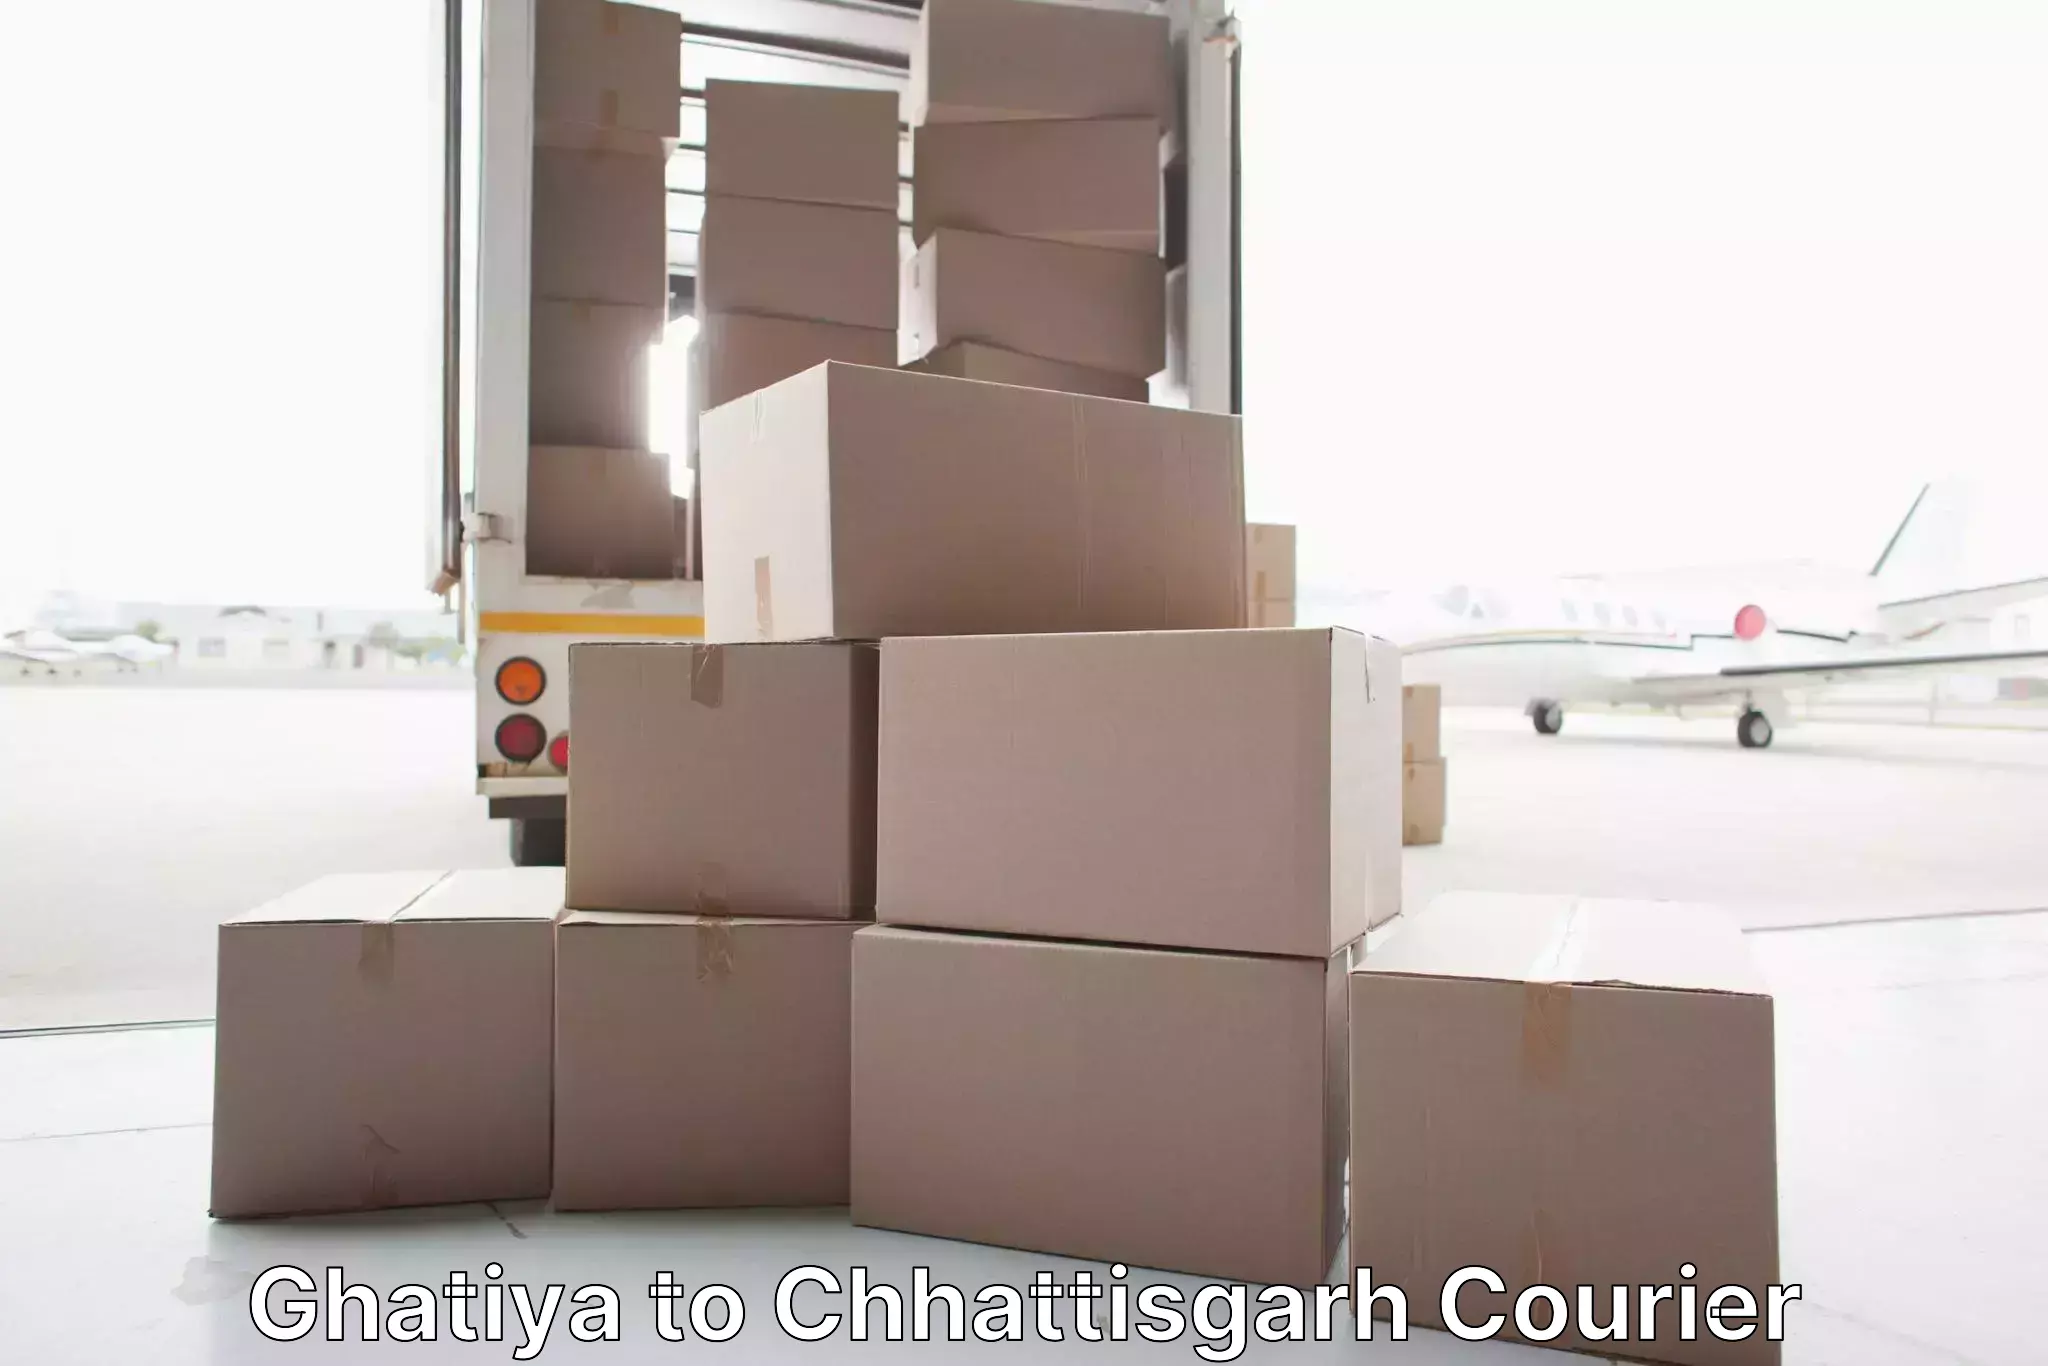 Furniture transport professionals Ghatiya to Pakhanjur